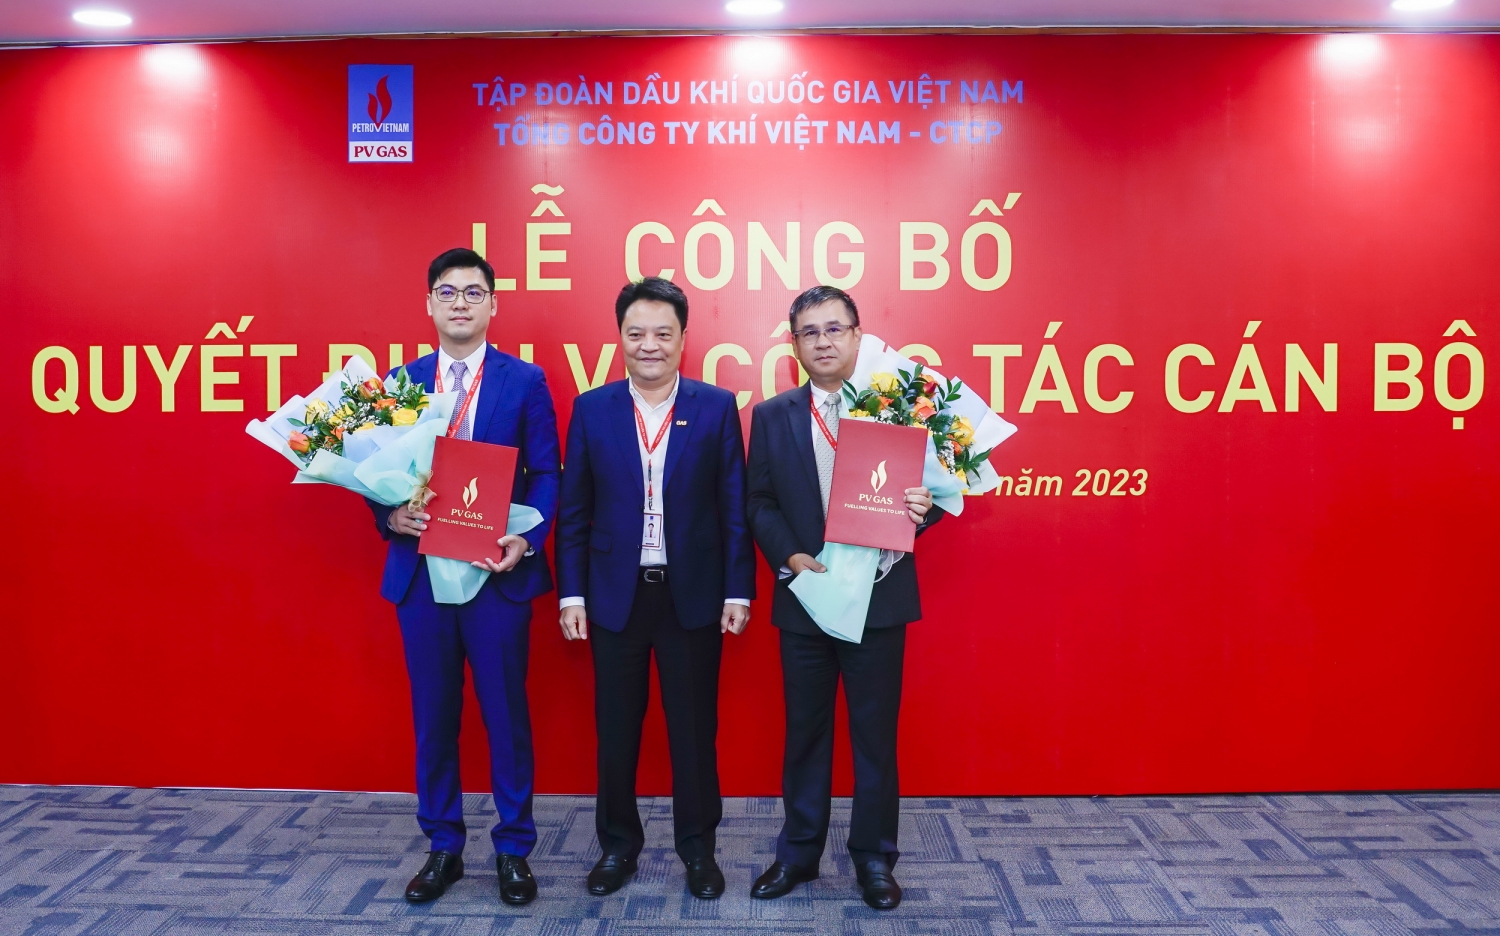 Tổng Giám đốc PV GAS Hoàng Văn Quang trao quyết định và tặng hoa chúc mừng 2 cán bộ vừa nhận quyết định mới của PV GAS